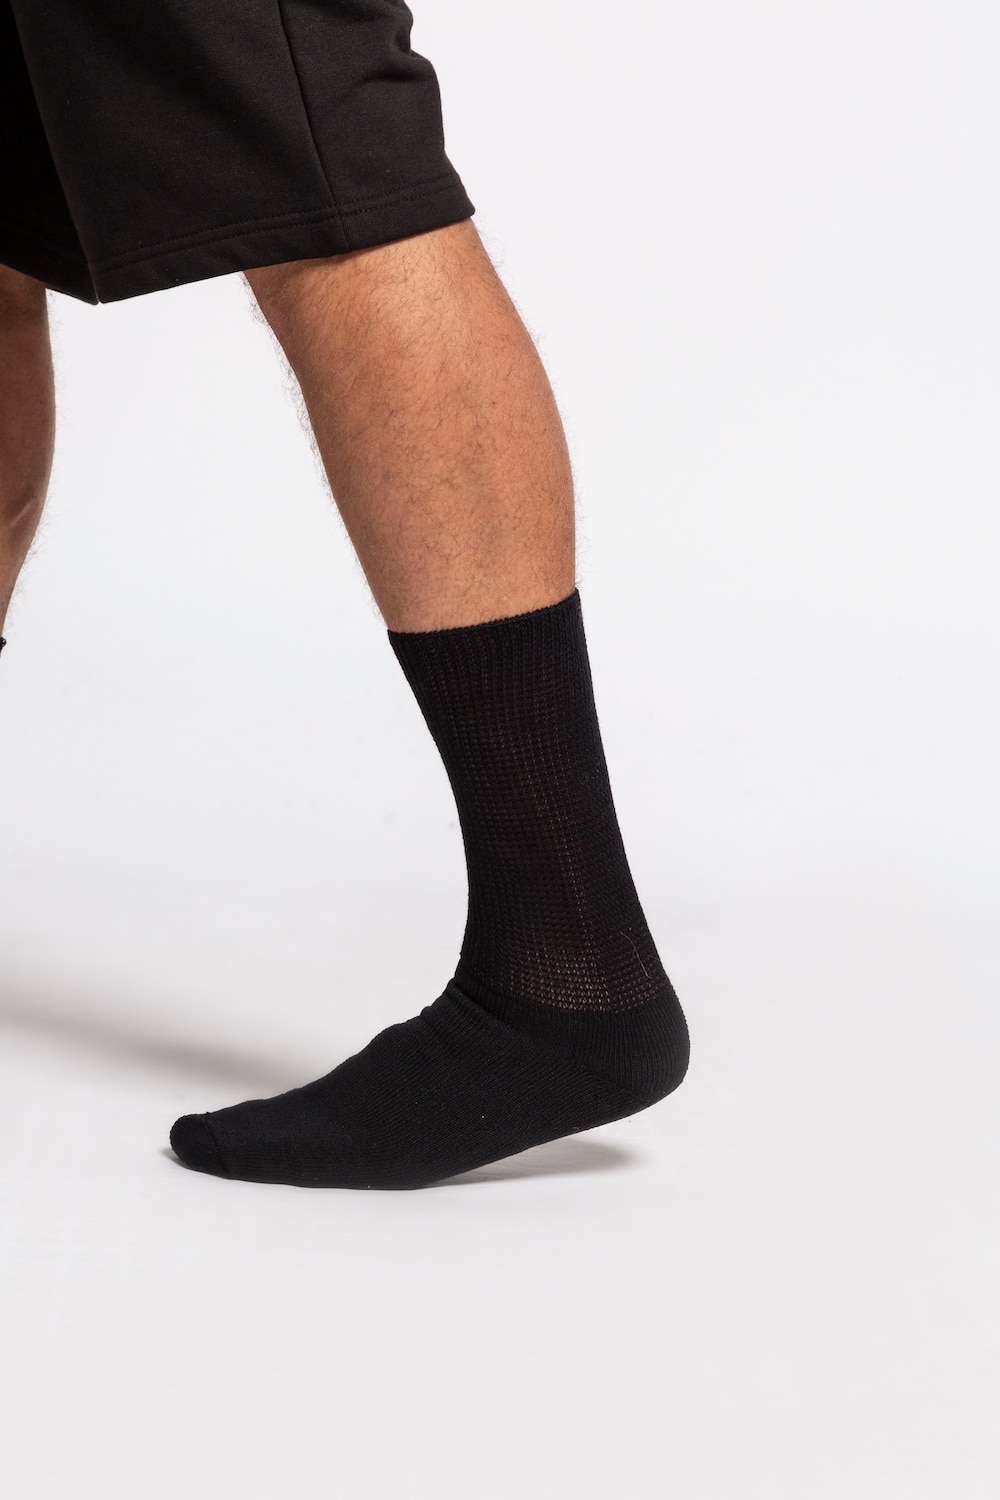 grandes tailles chaussettes en coton avec renfort au talon et aux orteils, hommes, noir, taille: 41-43, coton/fibres synthétiques, jp1880